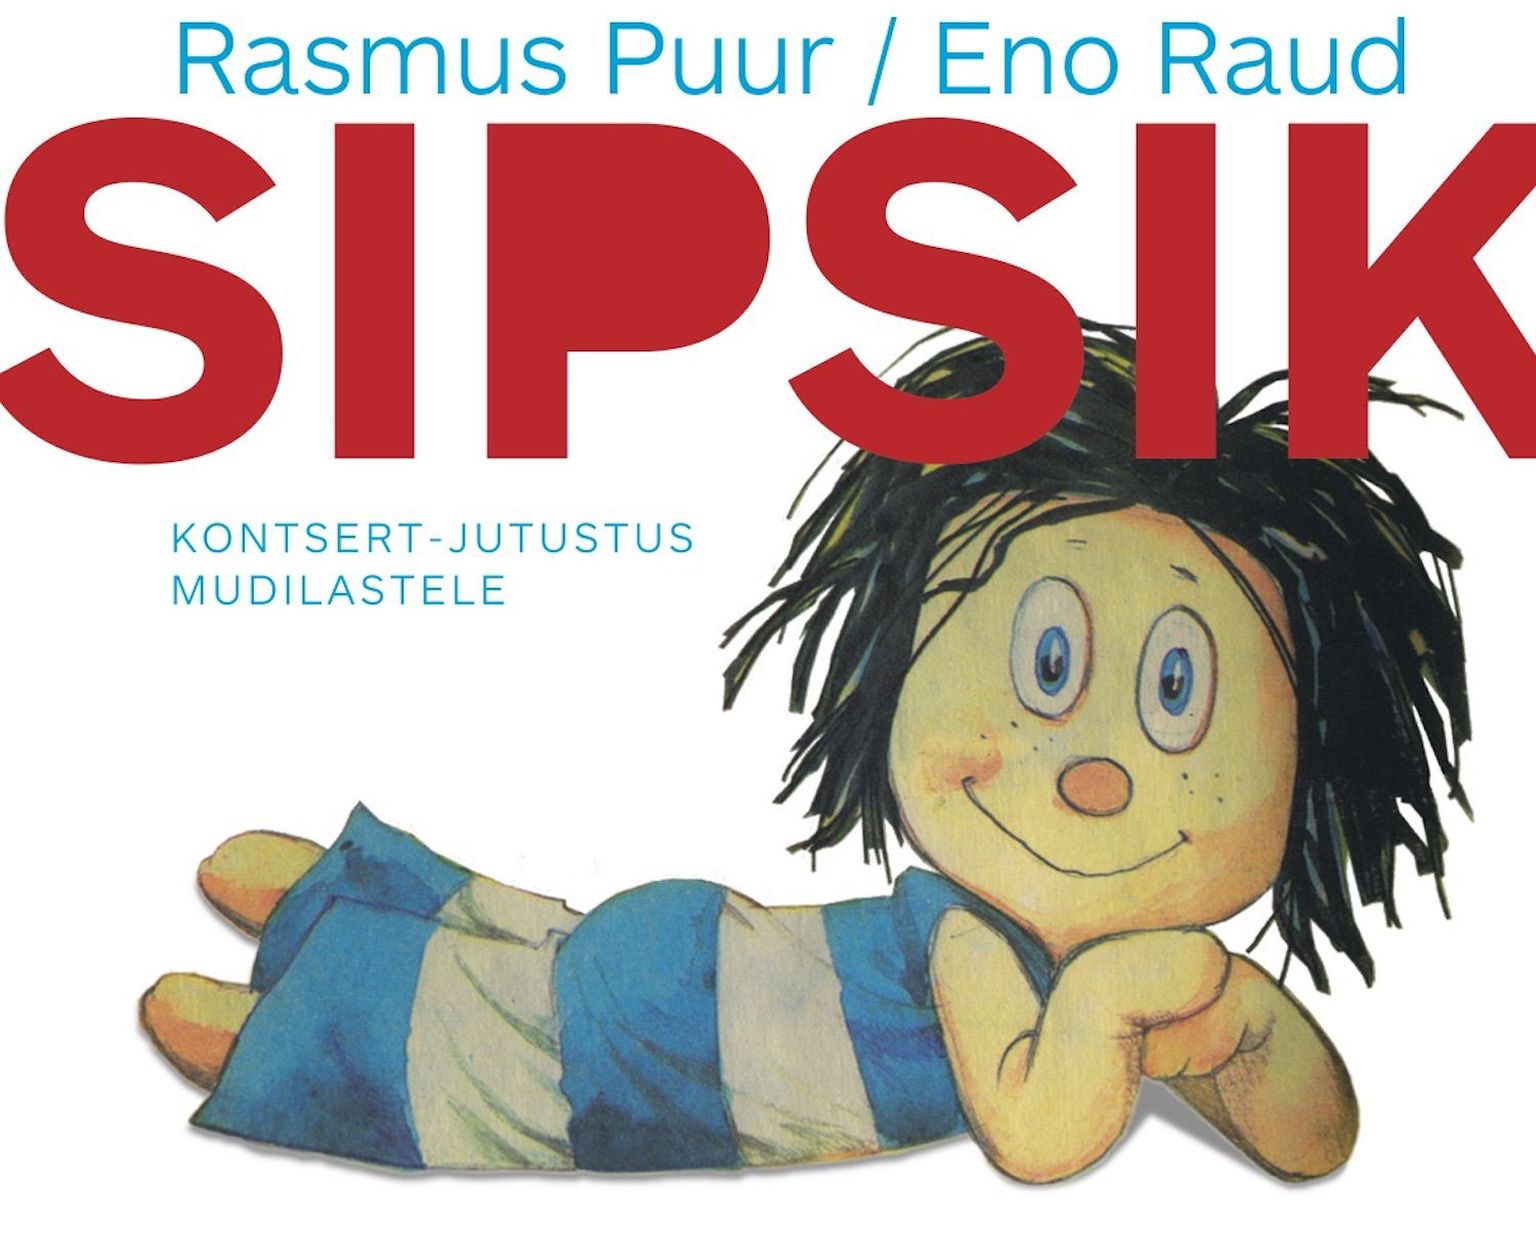 Rasmus Puuri kirjutatud kogupere teos «Sipsik» on jõudnud plaadile.